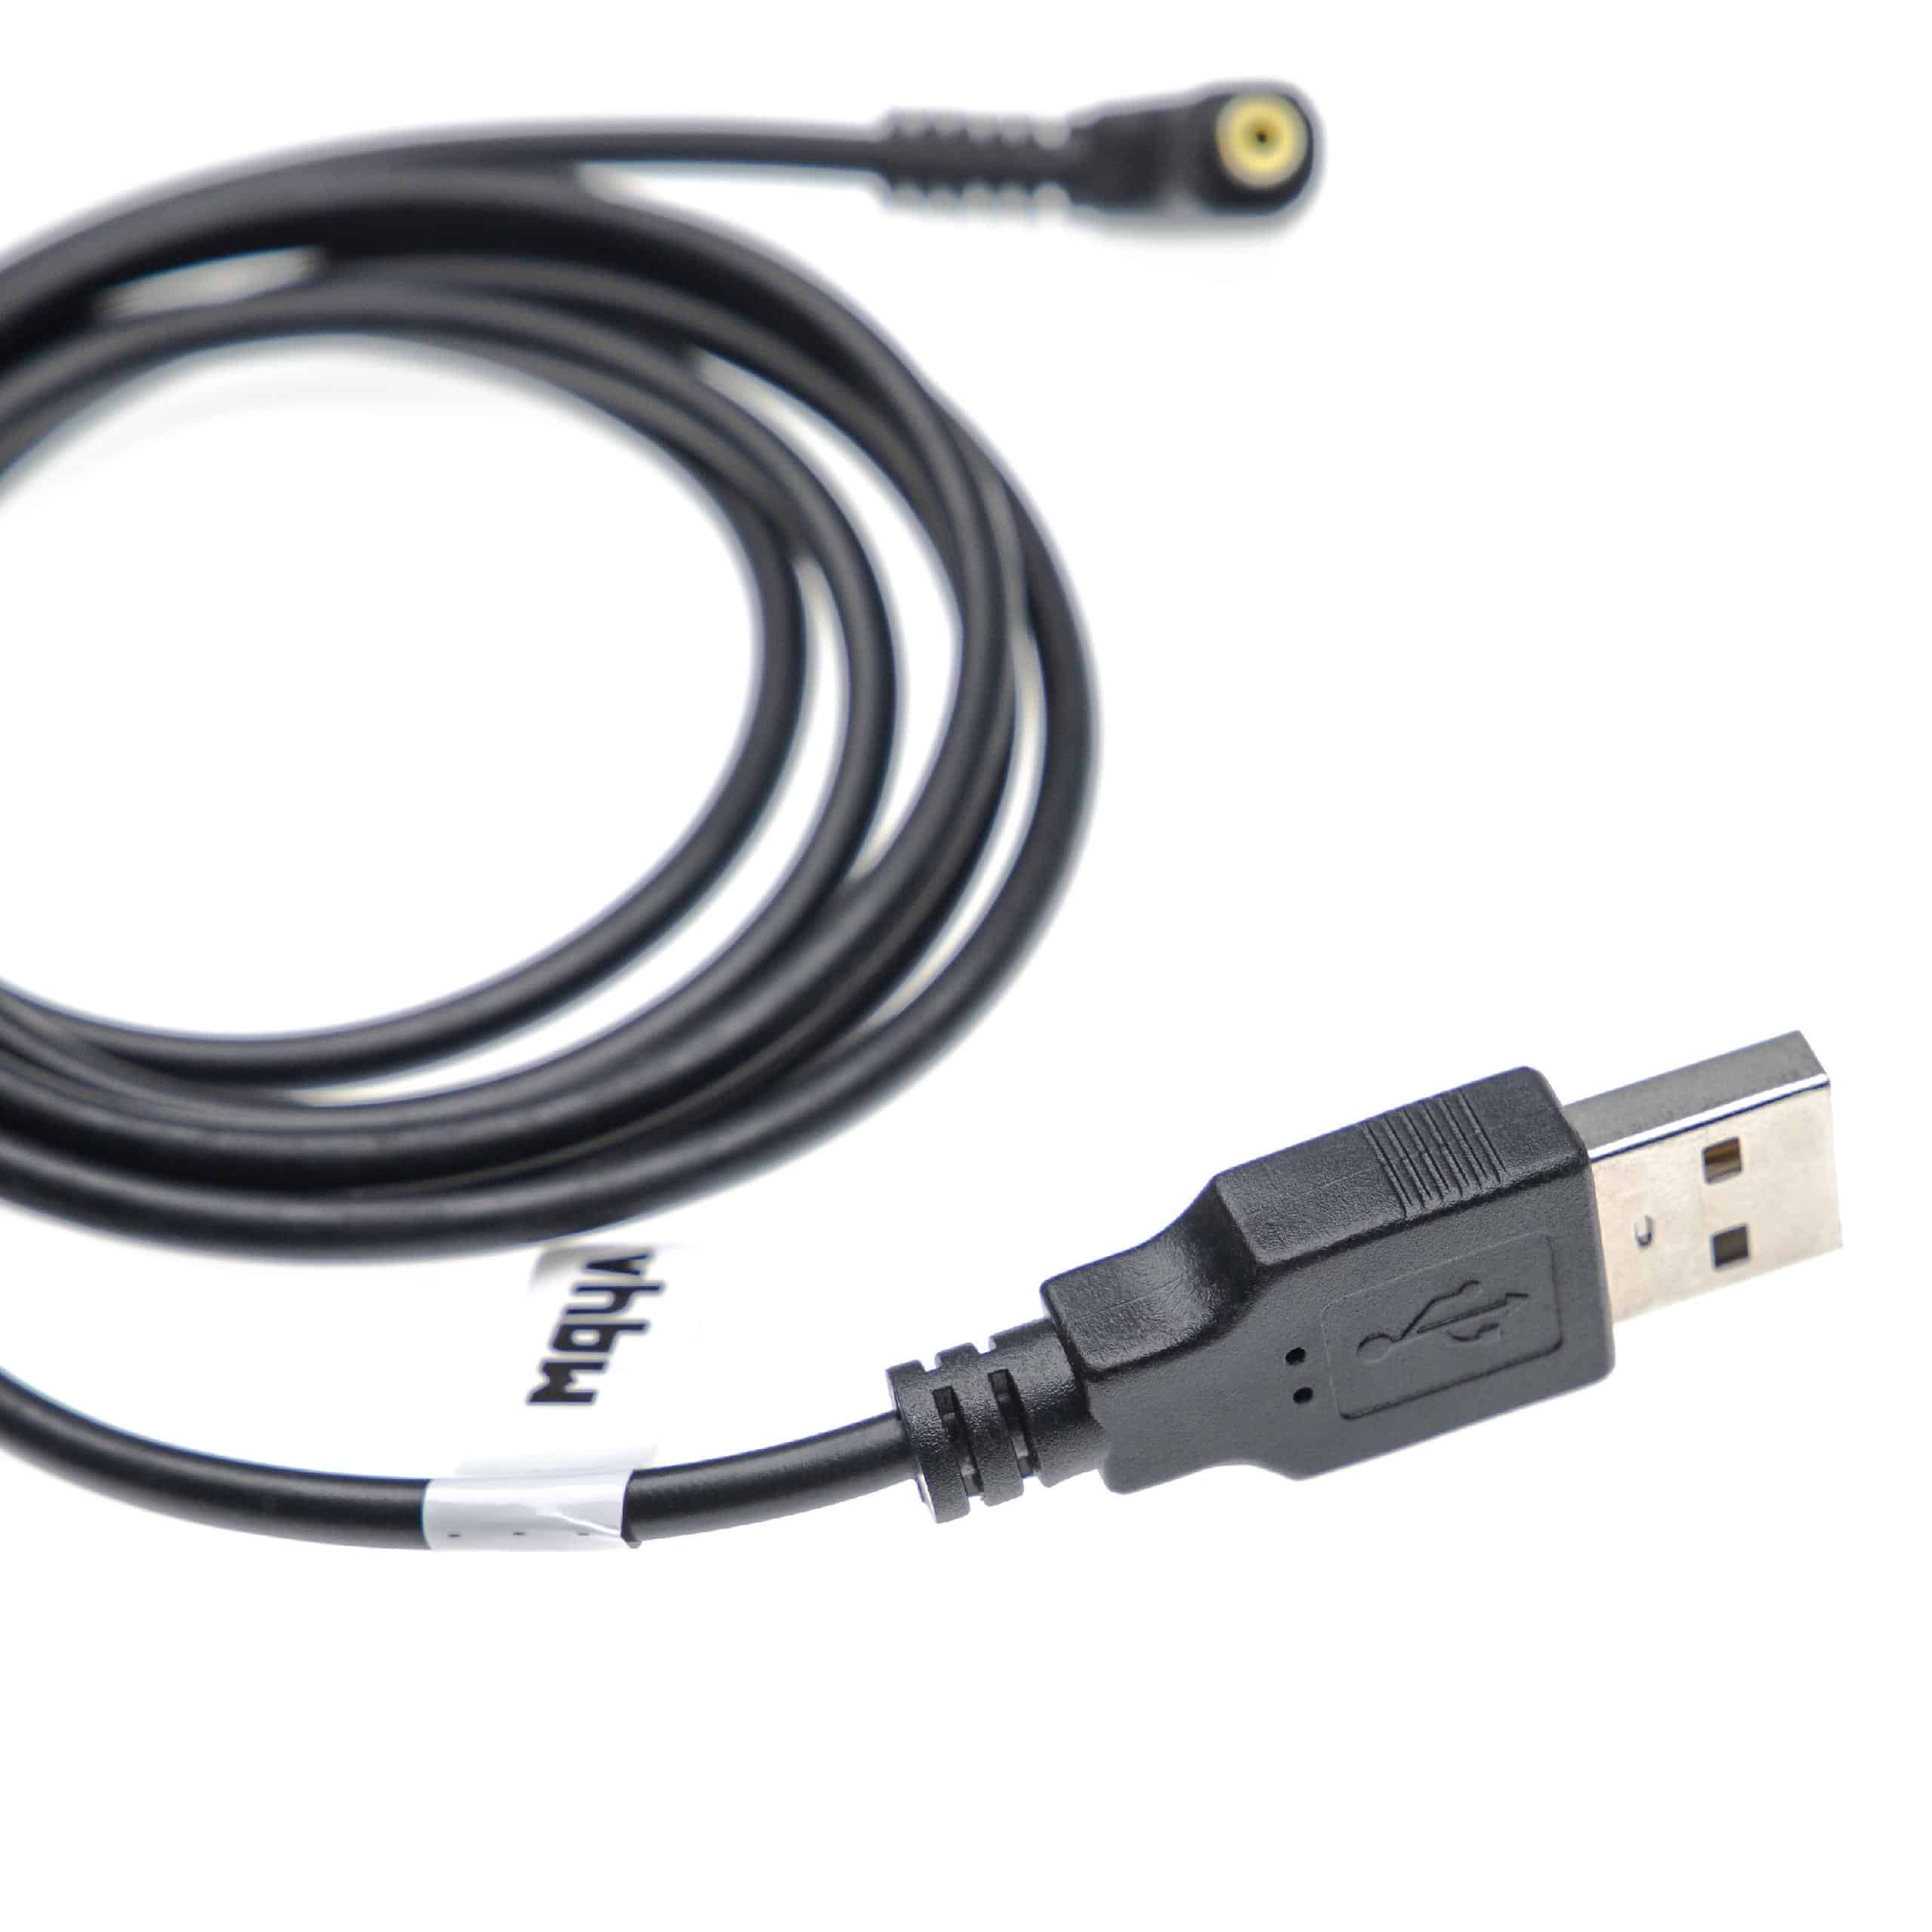 Cable de carga USB reemplaza Panasonic K2GHYYS00002 para cámaras, videocámaras Panasonic - 1,2 m